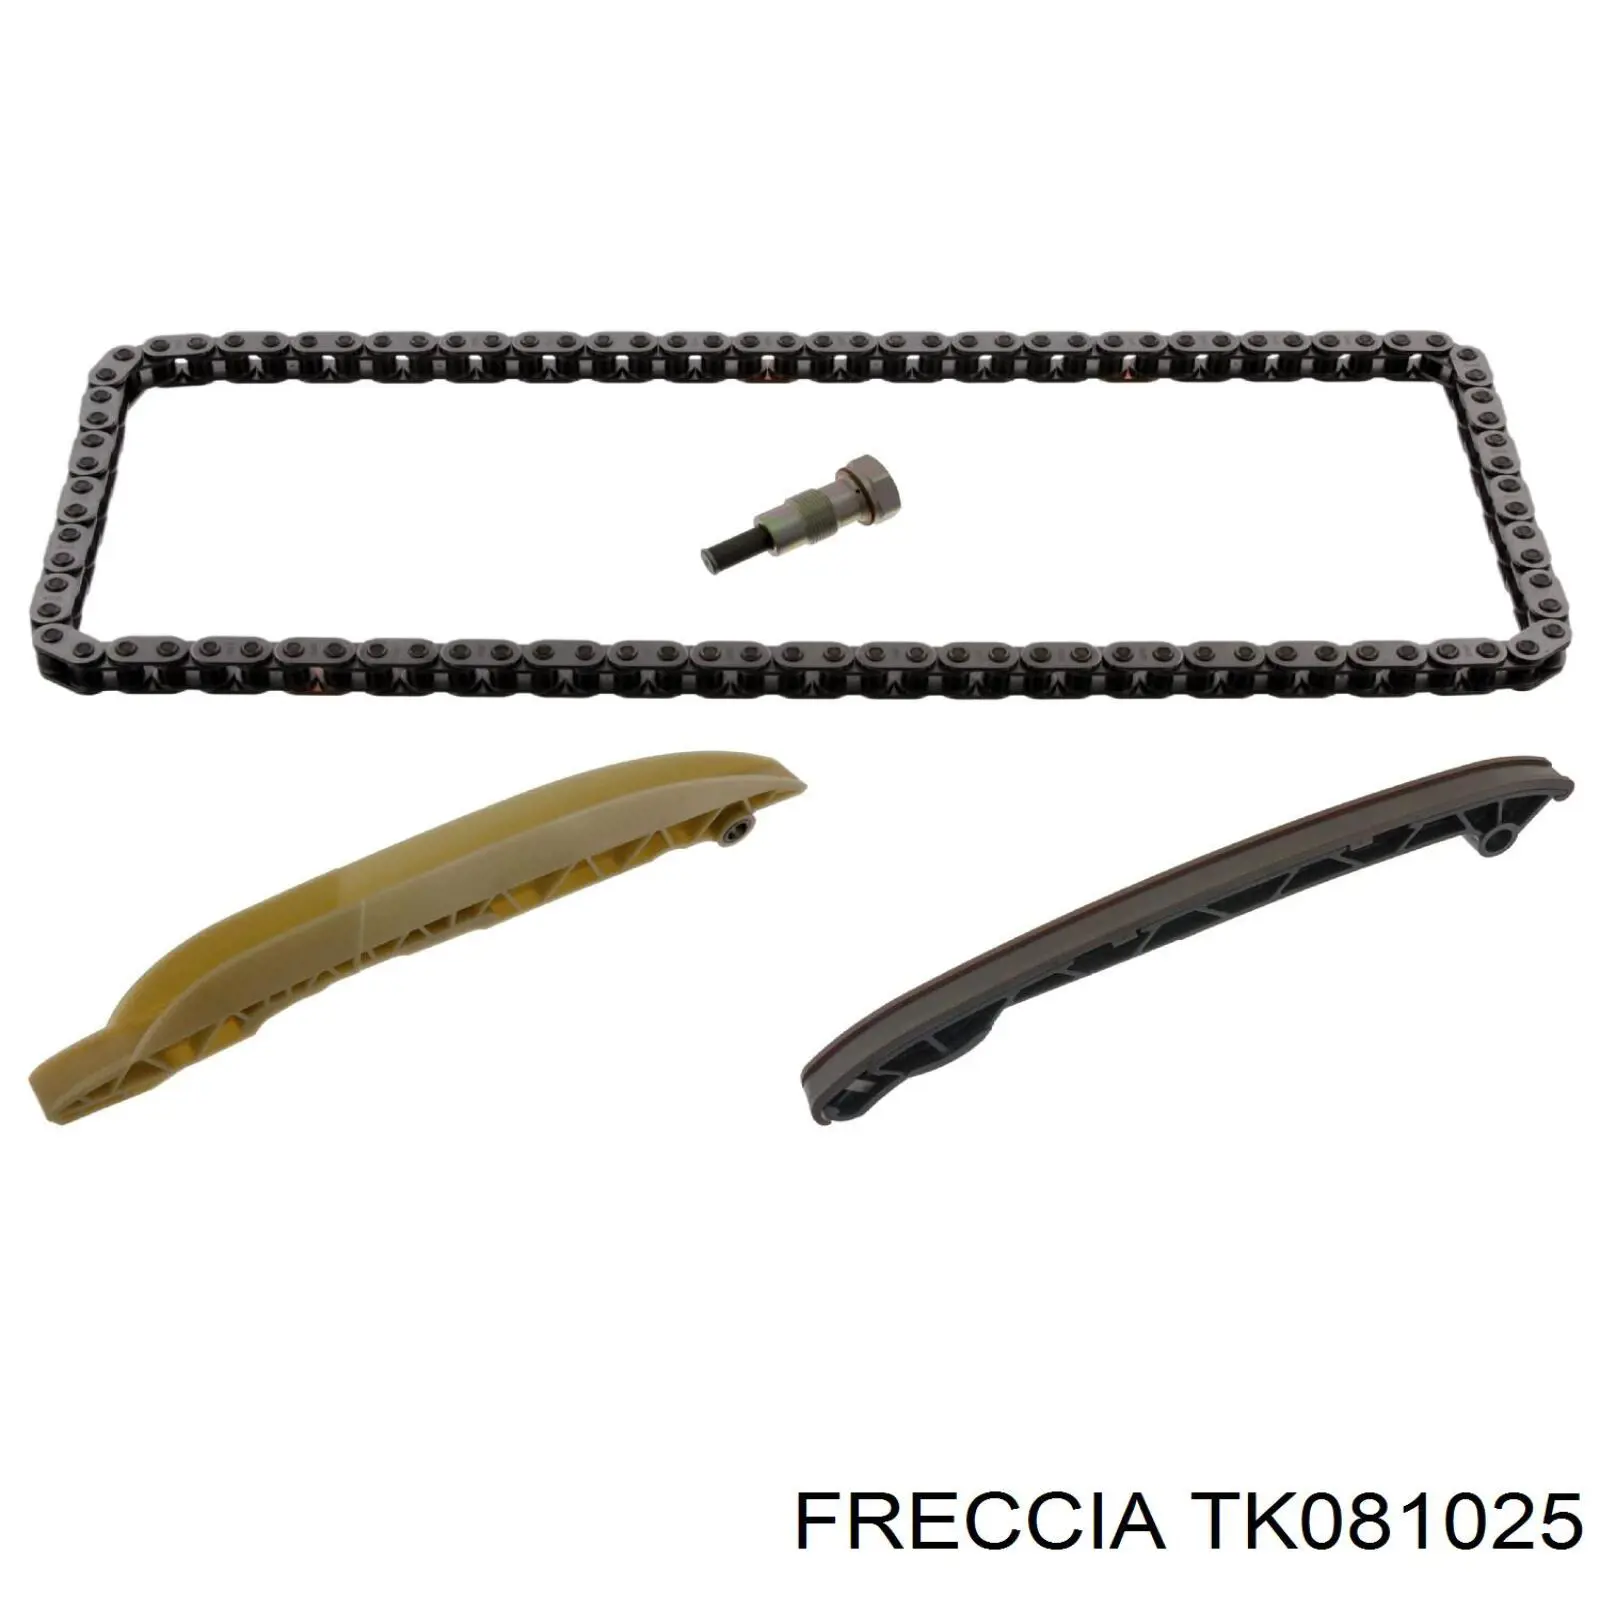 TK081025 Freccia ланцюг грм, комплект